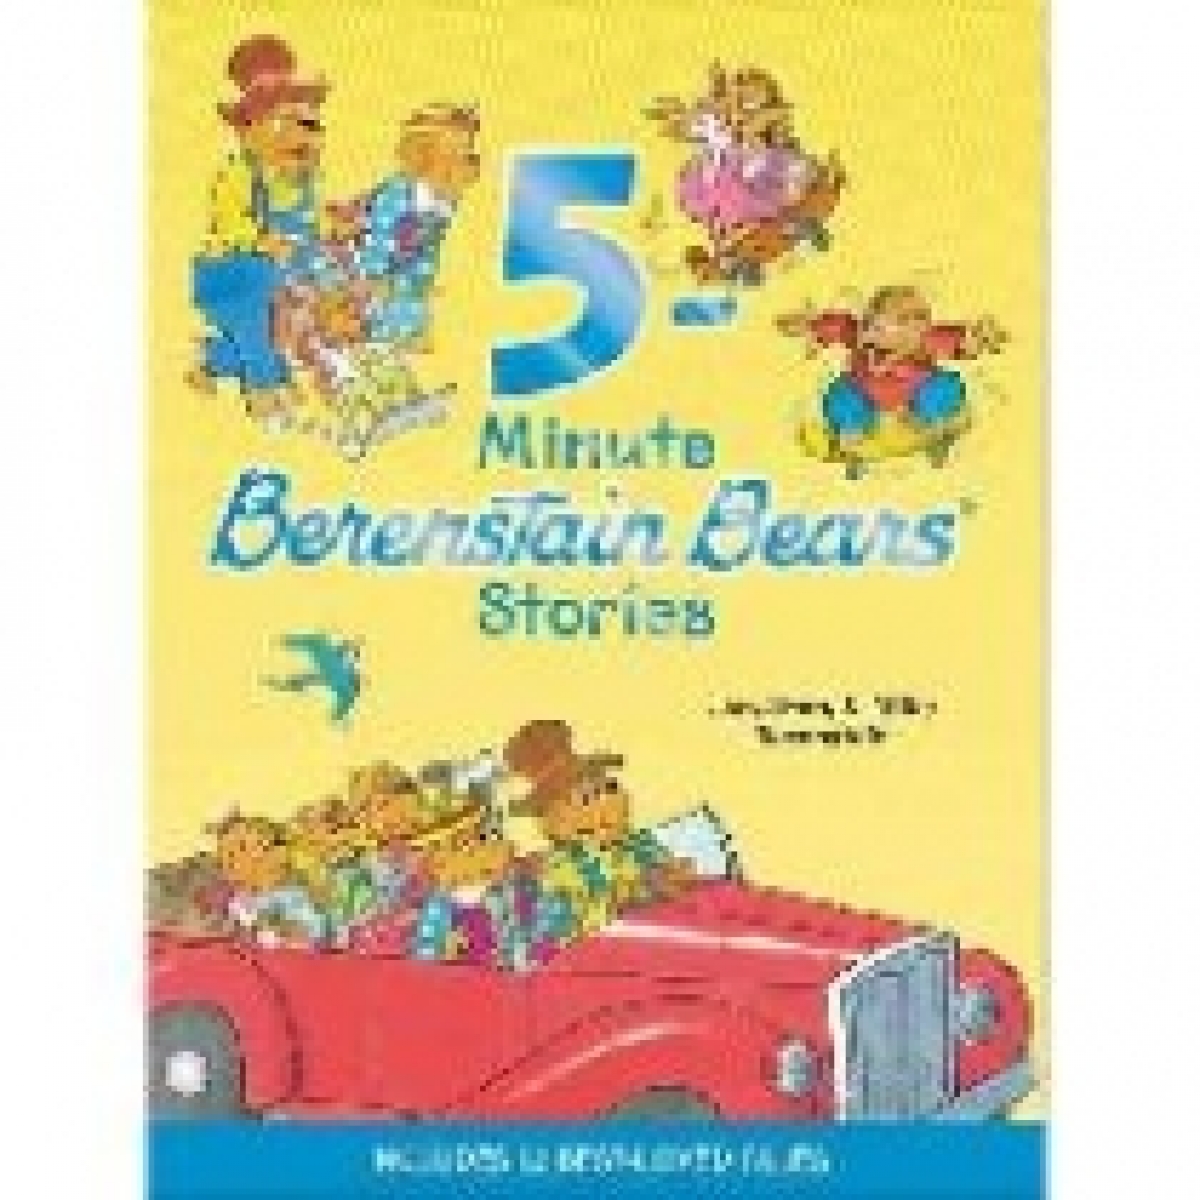 Berenstain Mike 5-Minute Berenstain Bears Stories 